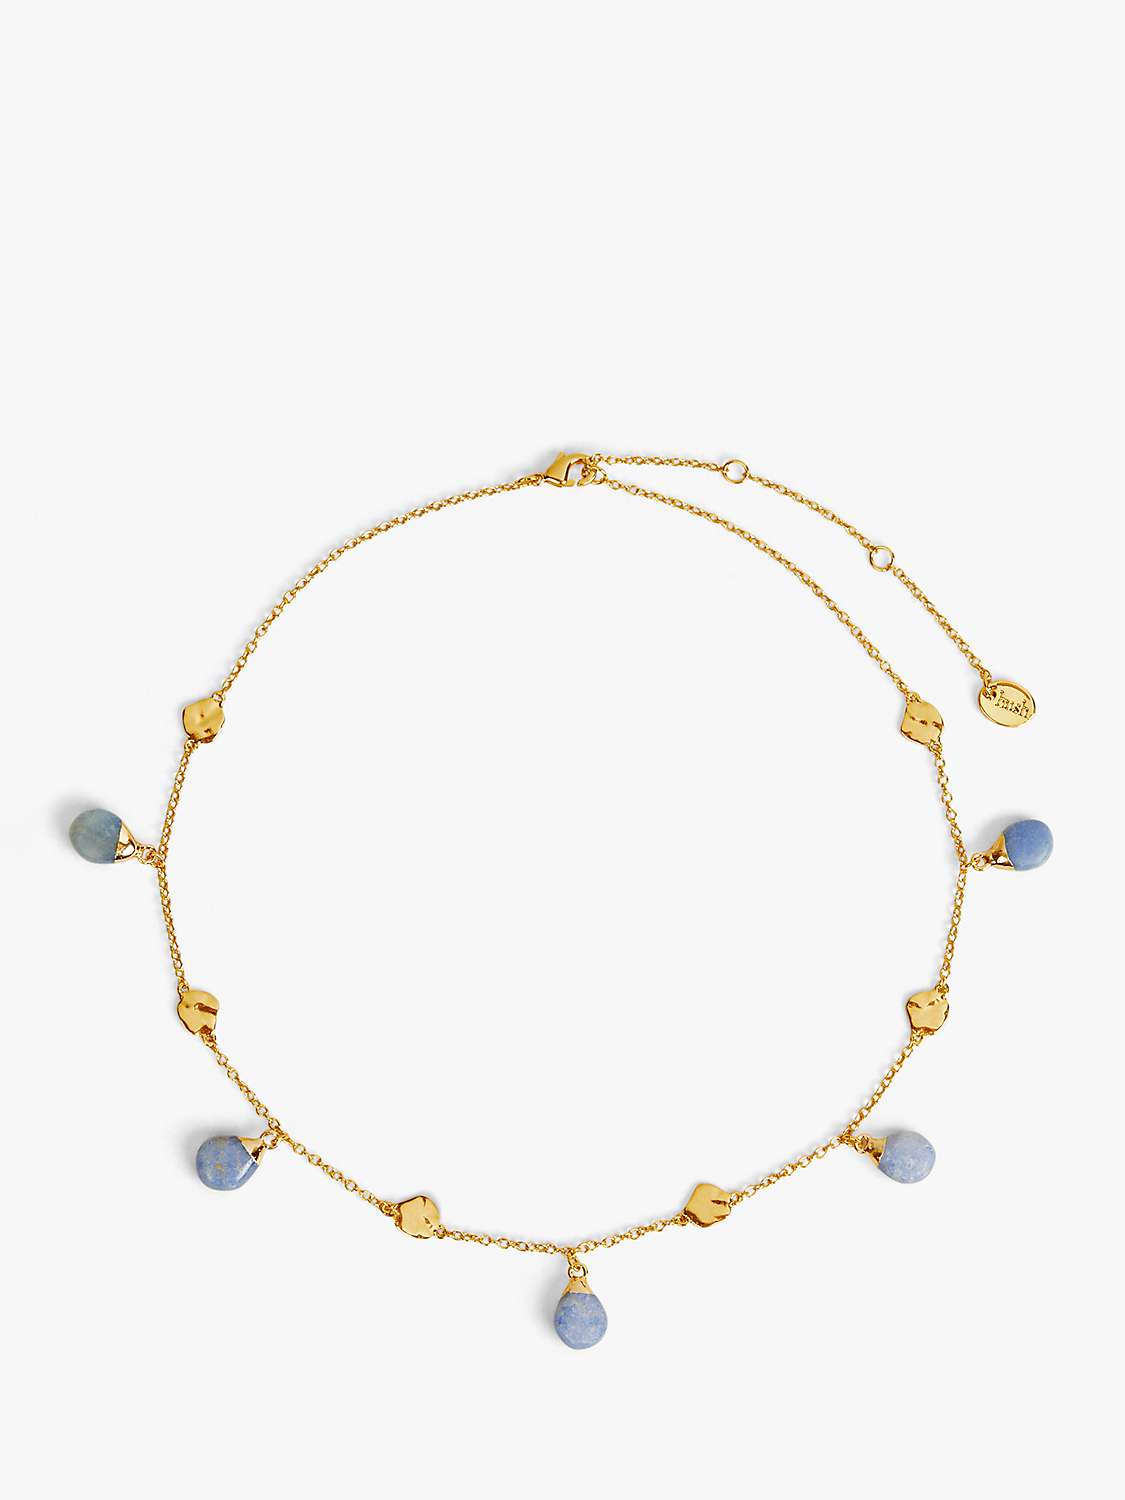 Buy HUSH Adeline Gemstone Choker Necklace, Gold/Blue Online at johnlewis.com